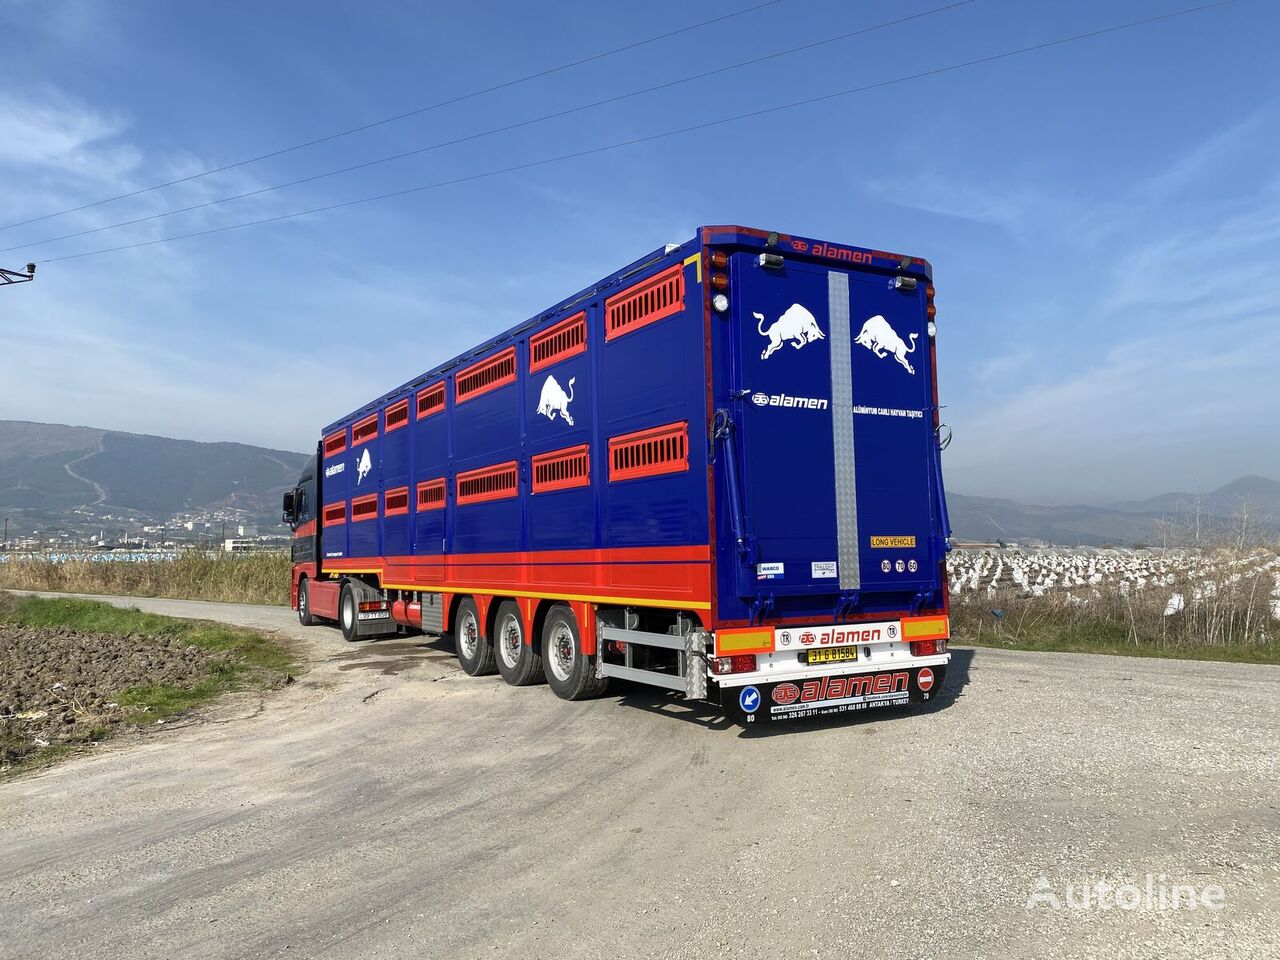 Alamen livestock transport trailer semirremolque para transporte de ganado nuevo